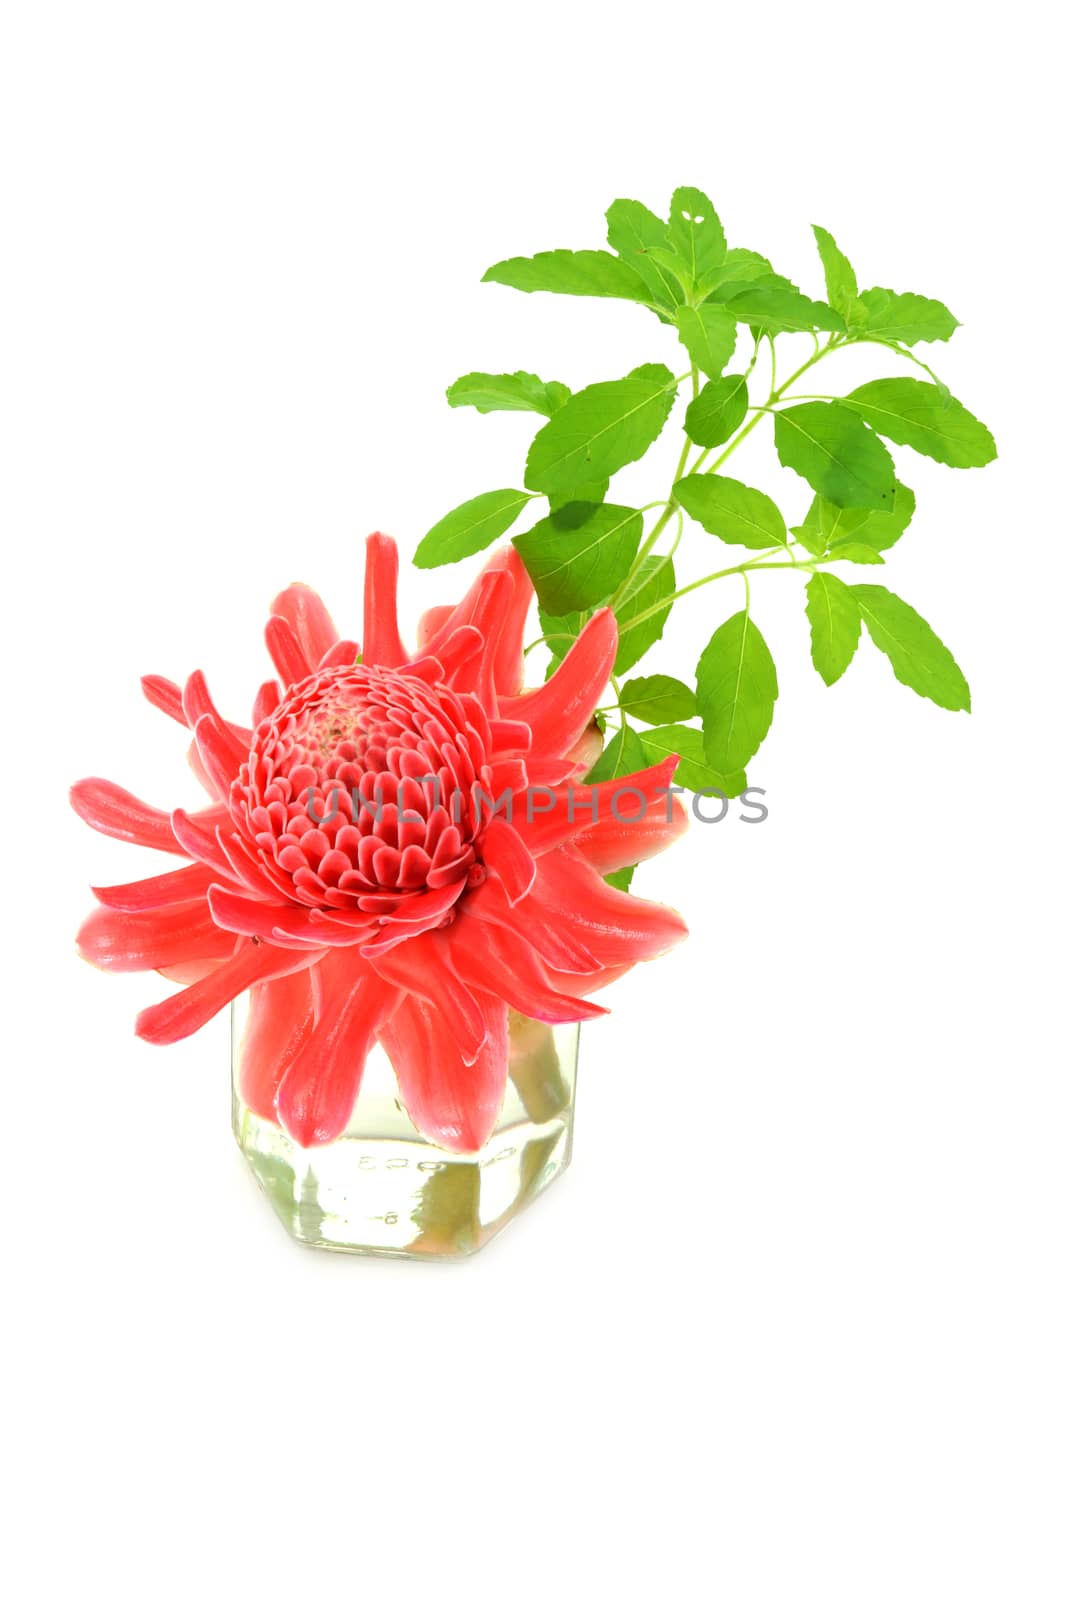 Tropical flower of red torch ginger and Ocimum sanctum. (Etlingera elatior (Jack) R.M. Sm.)